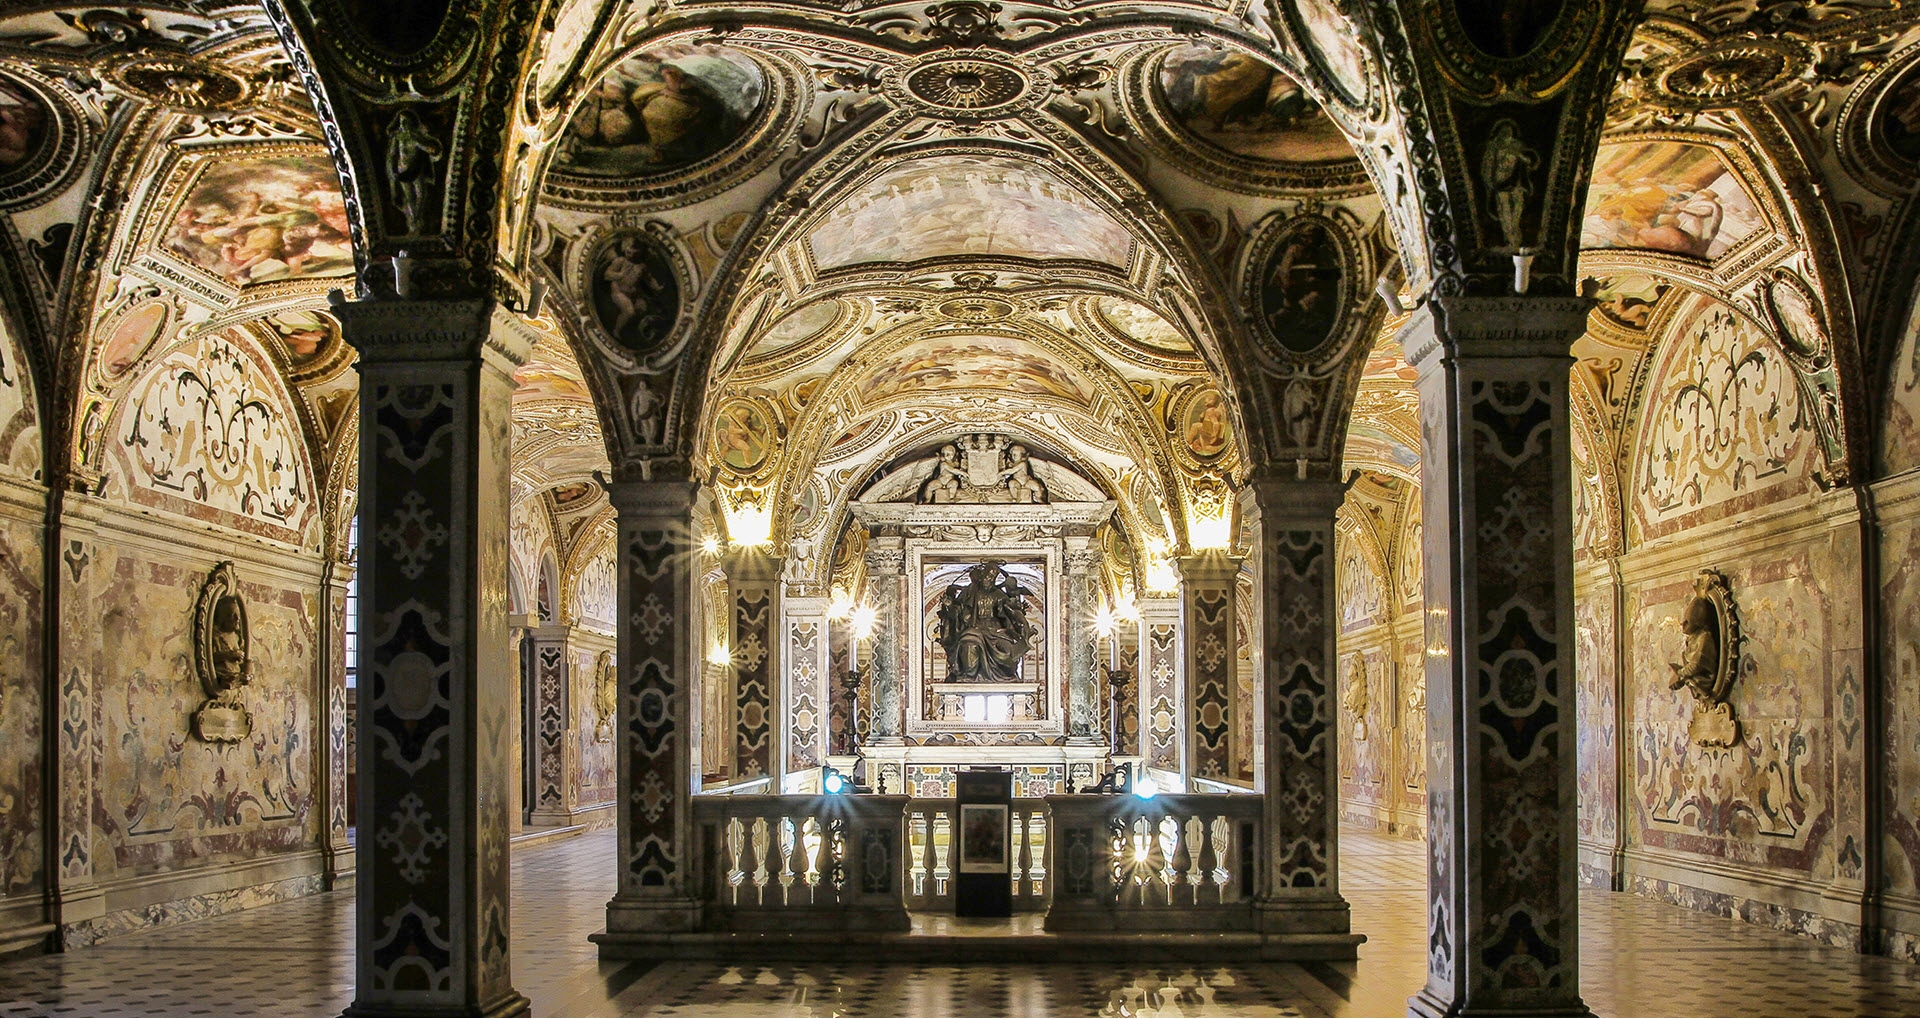 
  
    
      
      
          
Cripta Duomo Salerno

    
  
          
